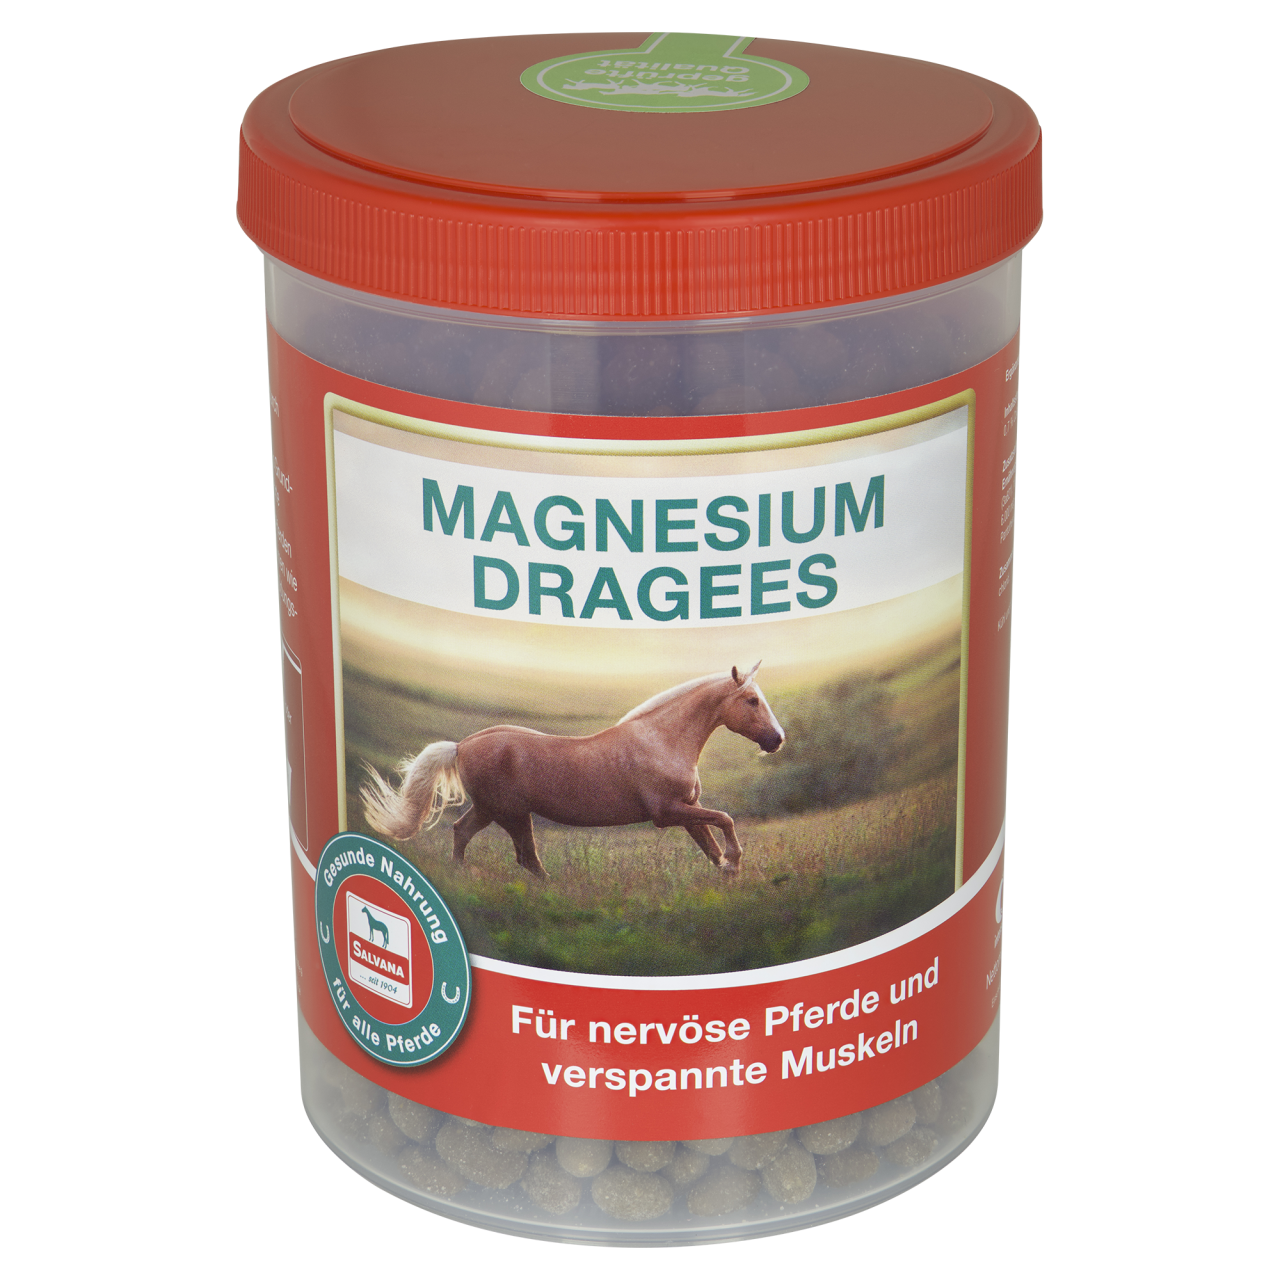 SALVANA MAGNESIUM DRAGEES - Spezialpräparat mit Magnesium für Pferde mit hohen Leistungsanforderungen und Stress